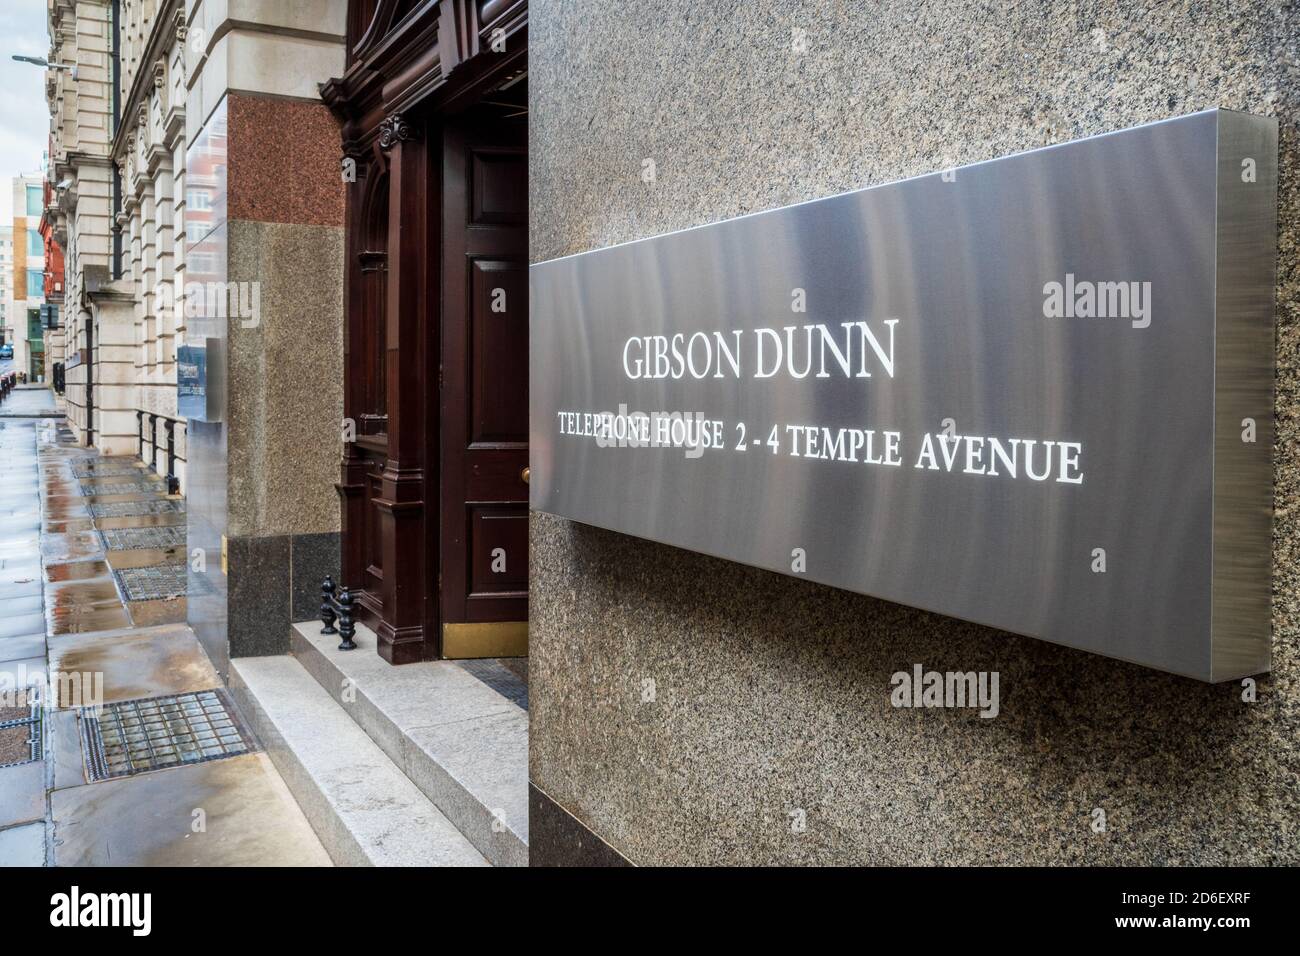 Gibson Dunn International Law Studio London uffici. Studio legale globale con sede a Los Angeles, fondato nel 1890. Gibson, Dunn e Crutcher LLP. Foto Stock